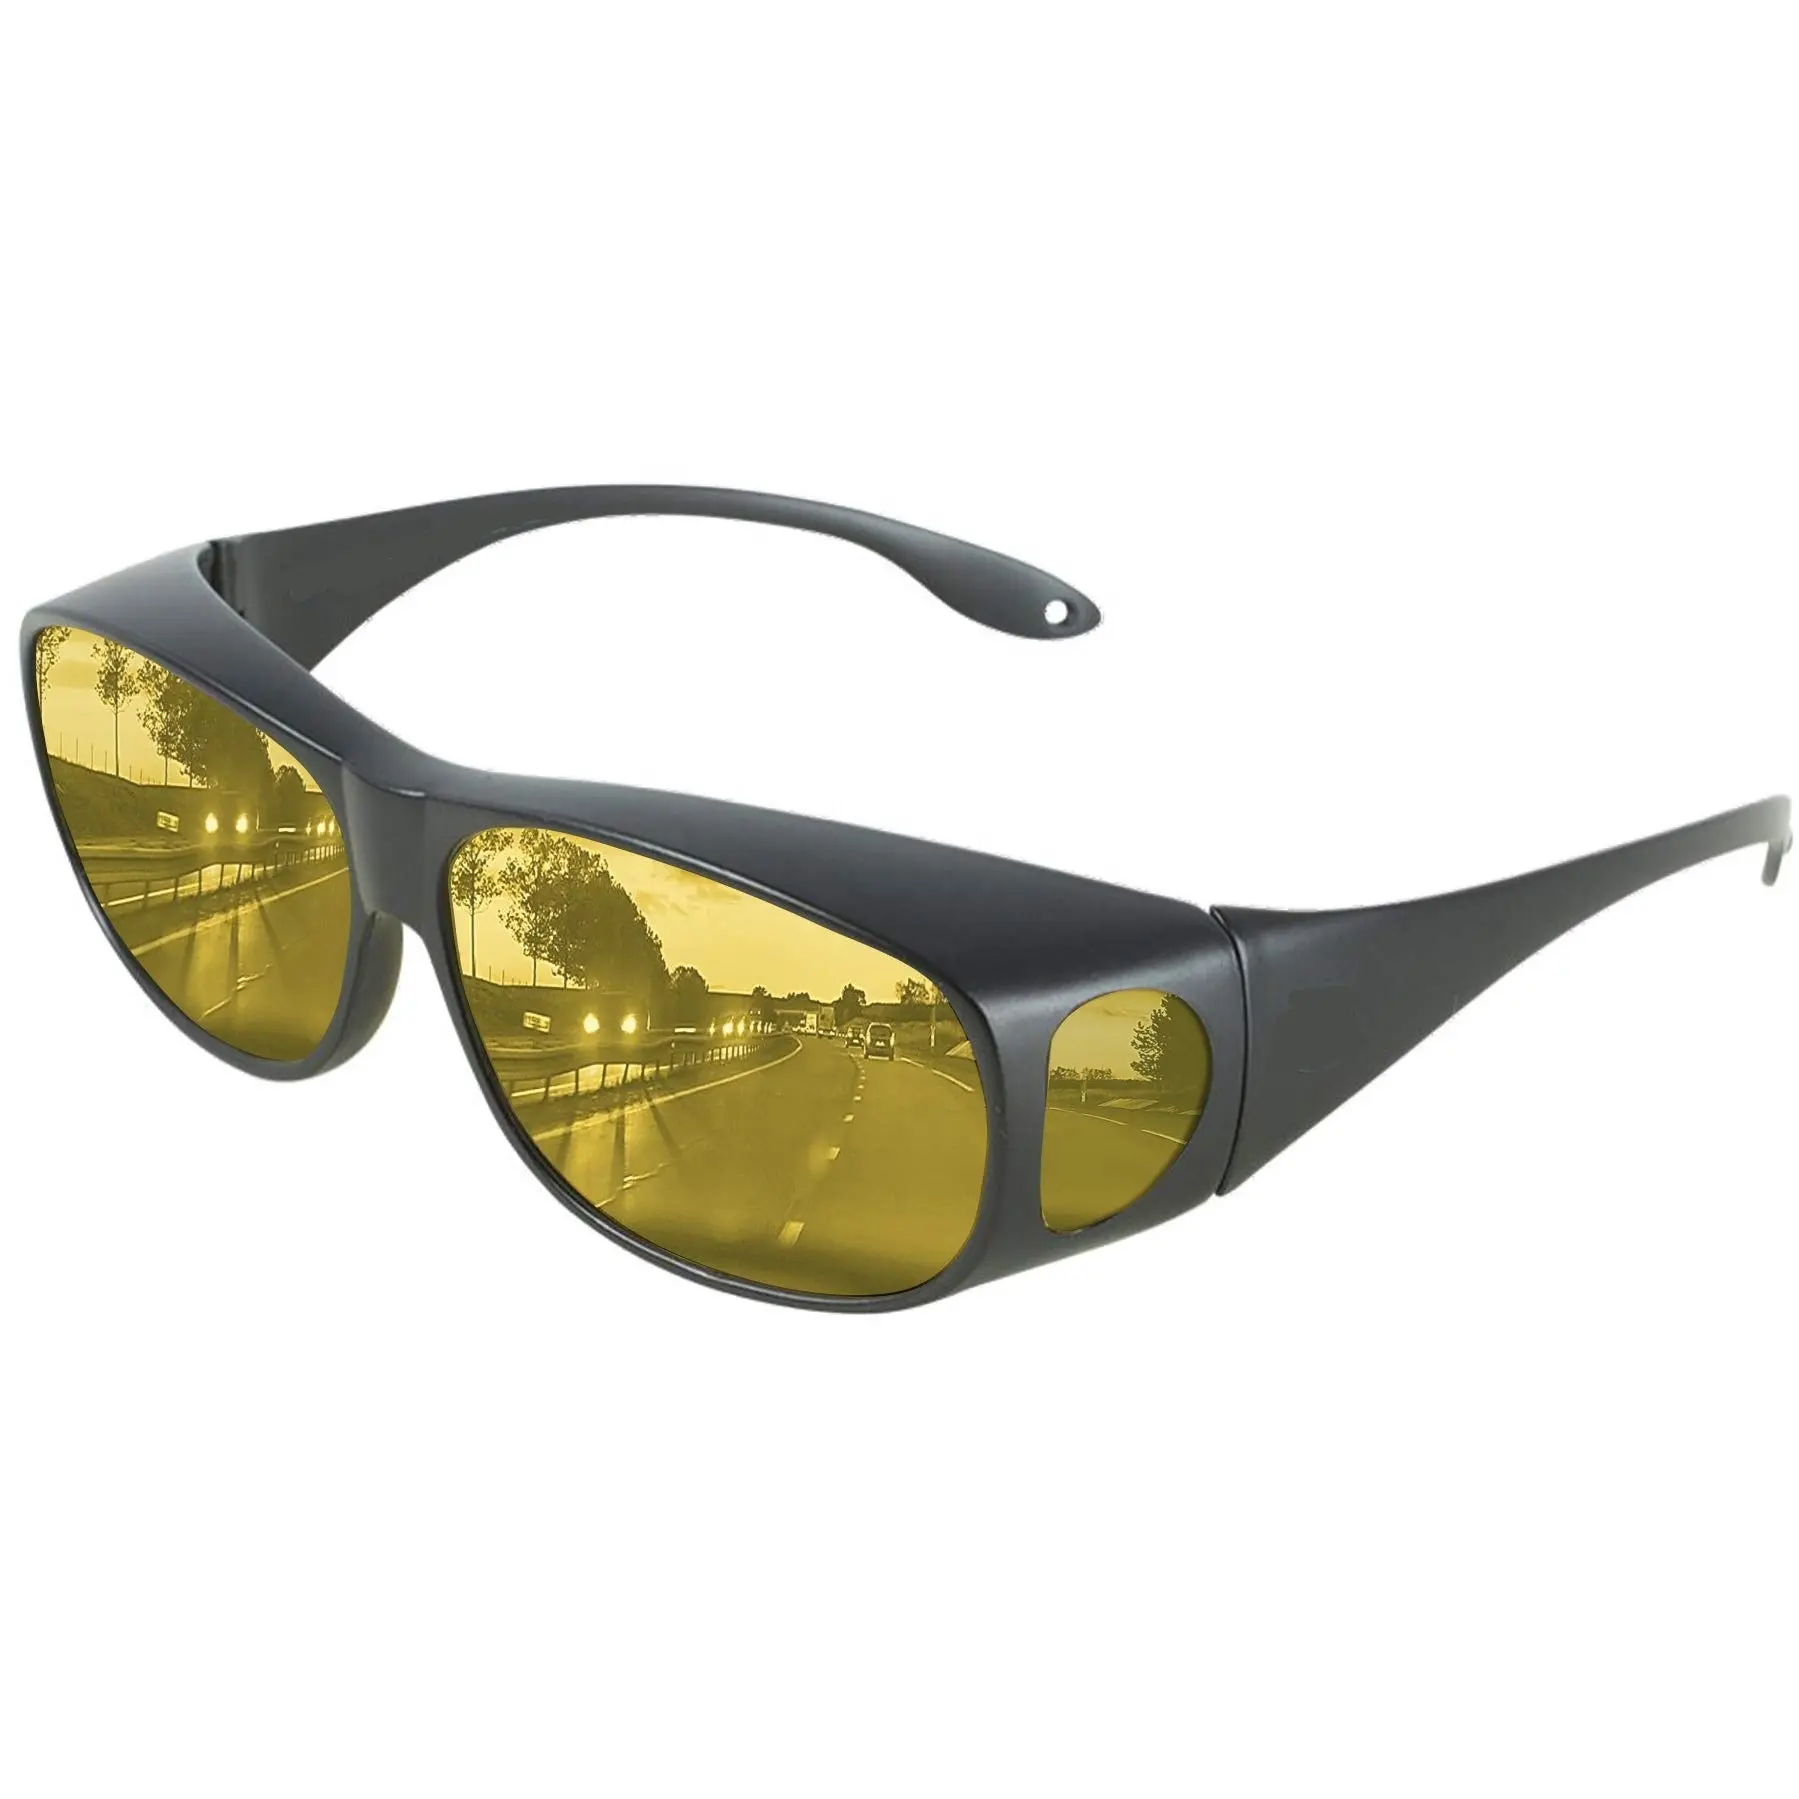 DLL3009 Tag Nacht Fahren Vision Brille polarisierte mode sonnenbrillen für Männer Frauen Anti Glare Fit Brillen